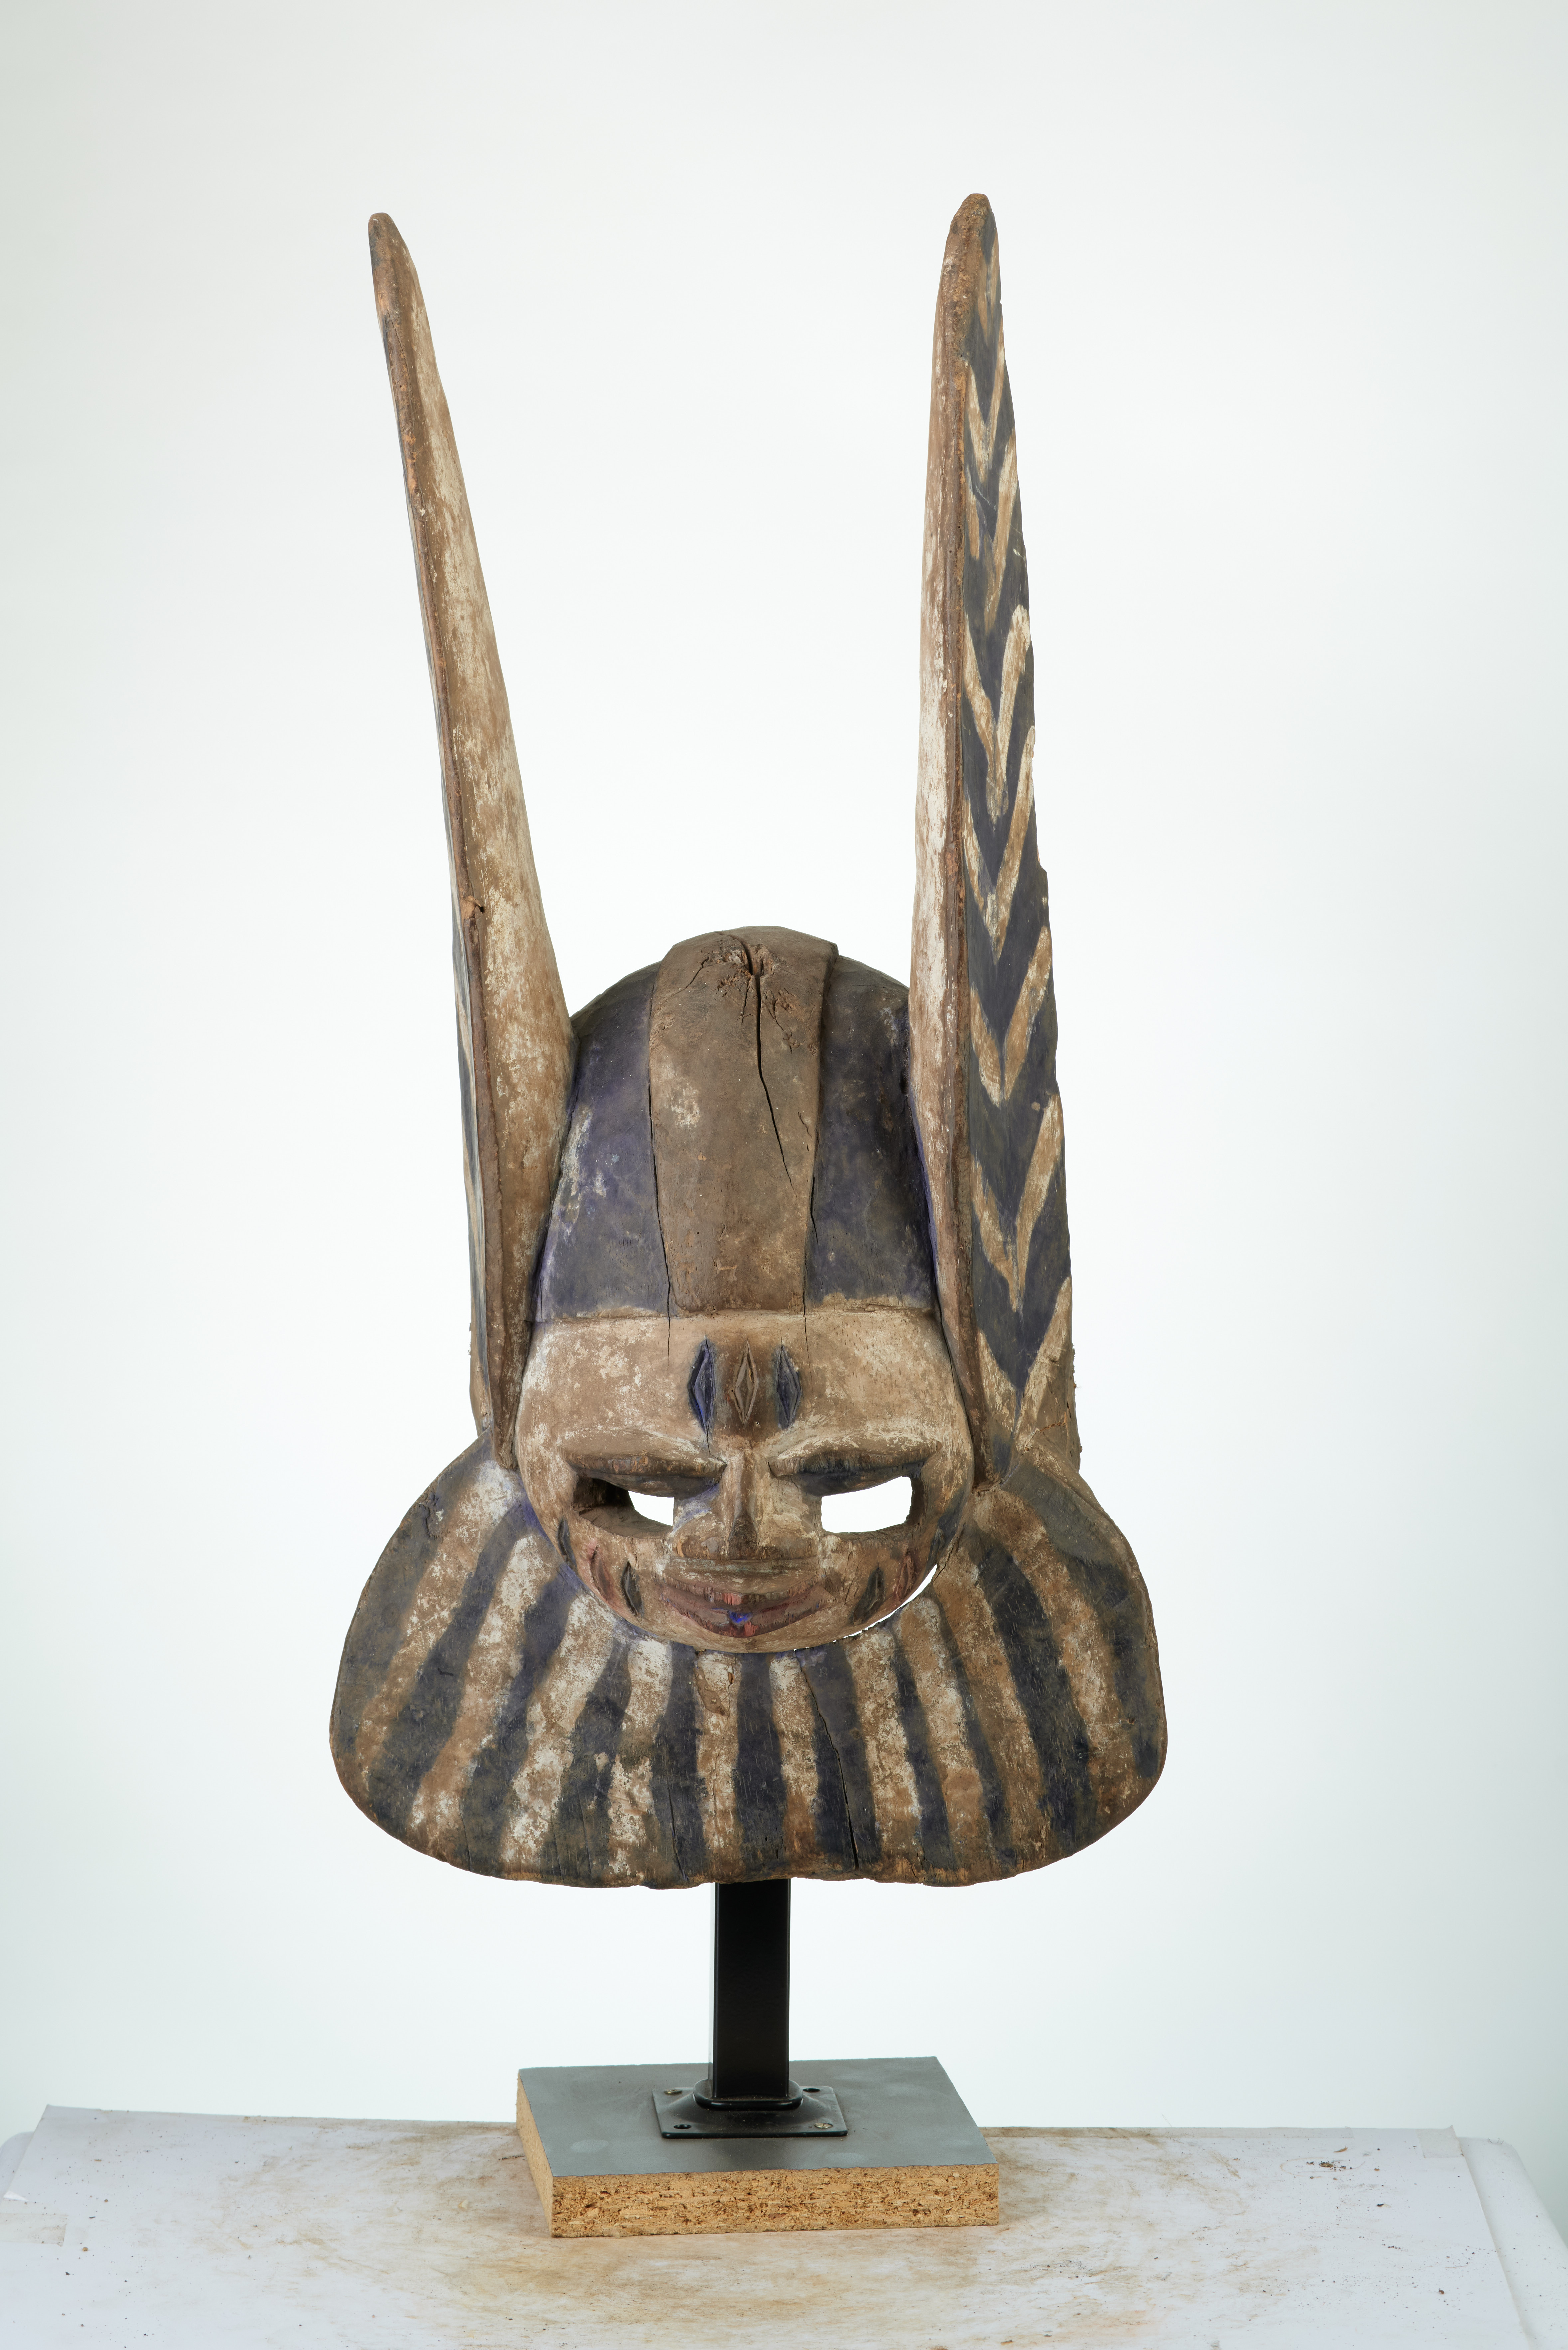 Youruba(masque), d`afrique : Nigéria, statuette Youruba(masque), masque ancien africain Youruba(masque), art du Nigéria - Art Africain, collection privées Belgique. Statue africaine de la tribu des Youruba(masque), provenant du Nigéria, 742/417.Masque OHORI appelé APASA.Il a une face humaine avec une large barbe et deux longues oreilles dressées,qui évoquent Ogun.Il apparait la nuit avec des chants, qui honorent,critiquent ou se moquent de groupes variés au sein de la communauté.  Région nord de Pobe.h.T.52cm.début du 20eme sc.(Nafaya). art,culture,masque,statue,statuette,pot,ivoire,exposition,expo,masque original,masques,statues,statuettes,pots,expositions,expo,masques originaux,collectionneur d`art,art africain,culture africaine,masque africain,statue africaine,statuette africaine,pot africain,ivoire africain,exposition africain,expo africain,masque origina africainl,masques africains,statues africaines,statuettes africaines,pots africains,expositions africaines,expo africaines,masques originaux  africains,collectionneur d`art africain